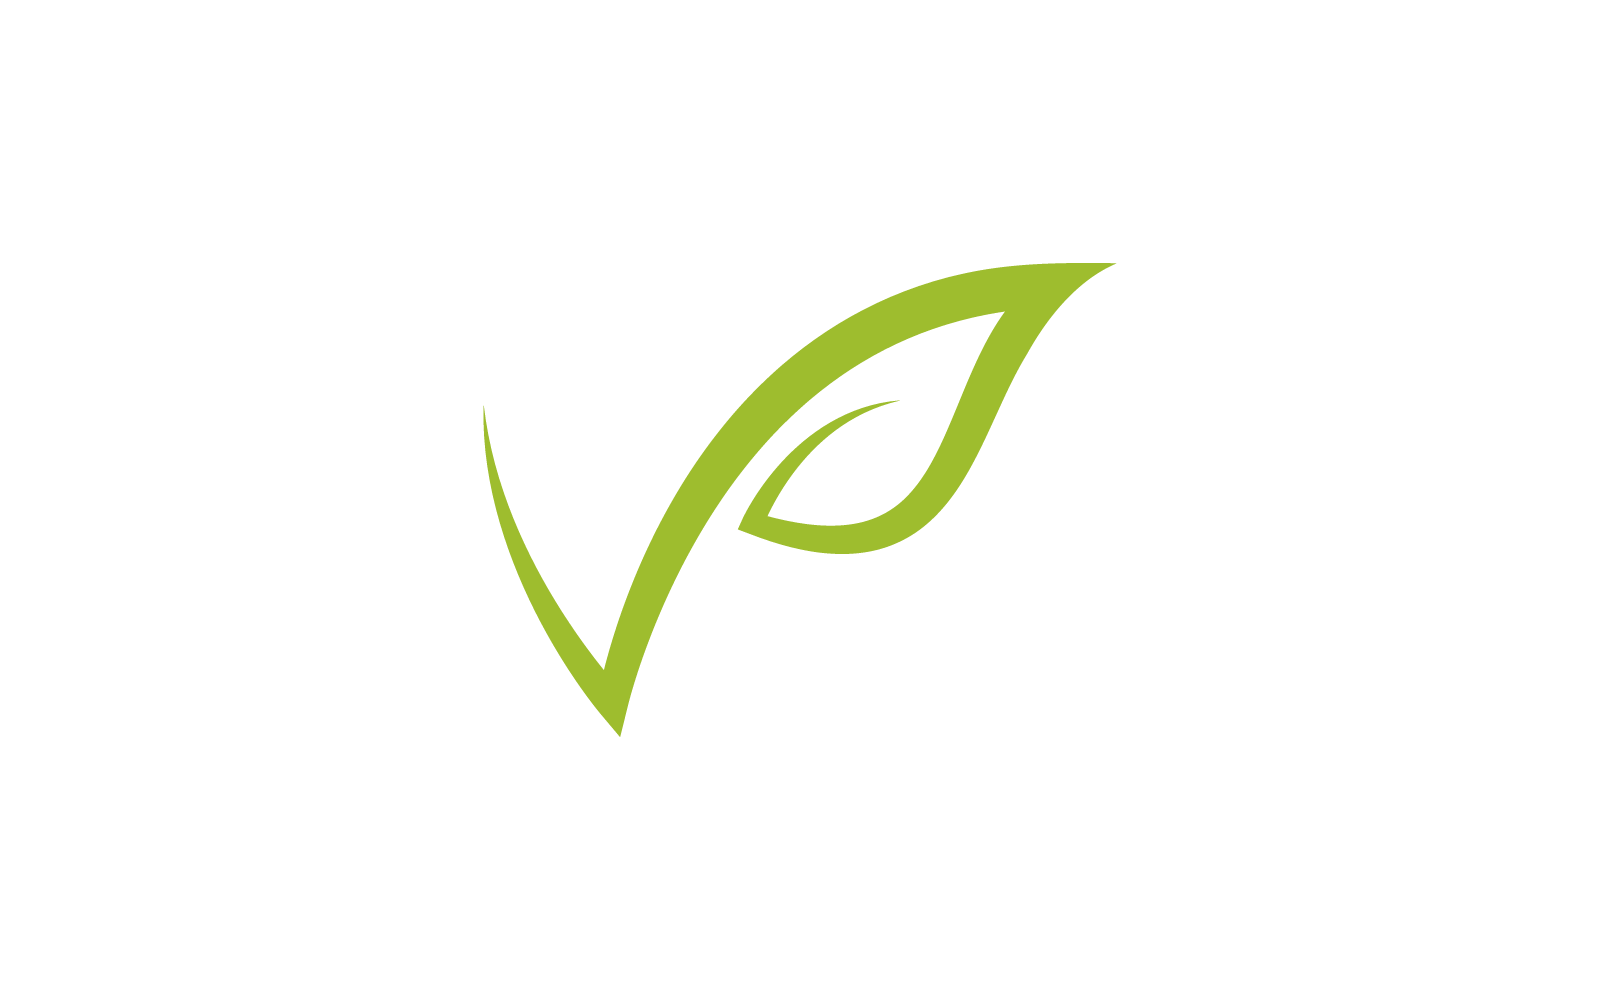 Green leaf nature logo design illustration